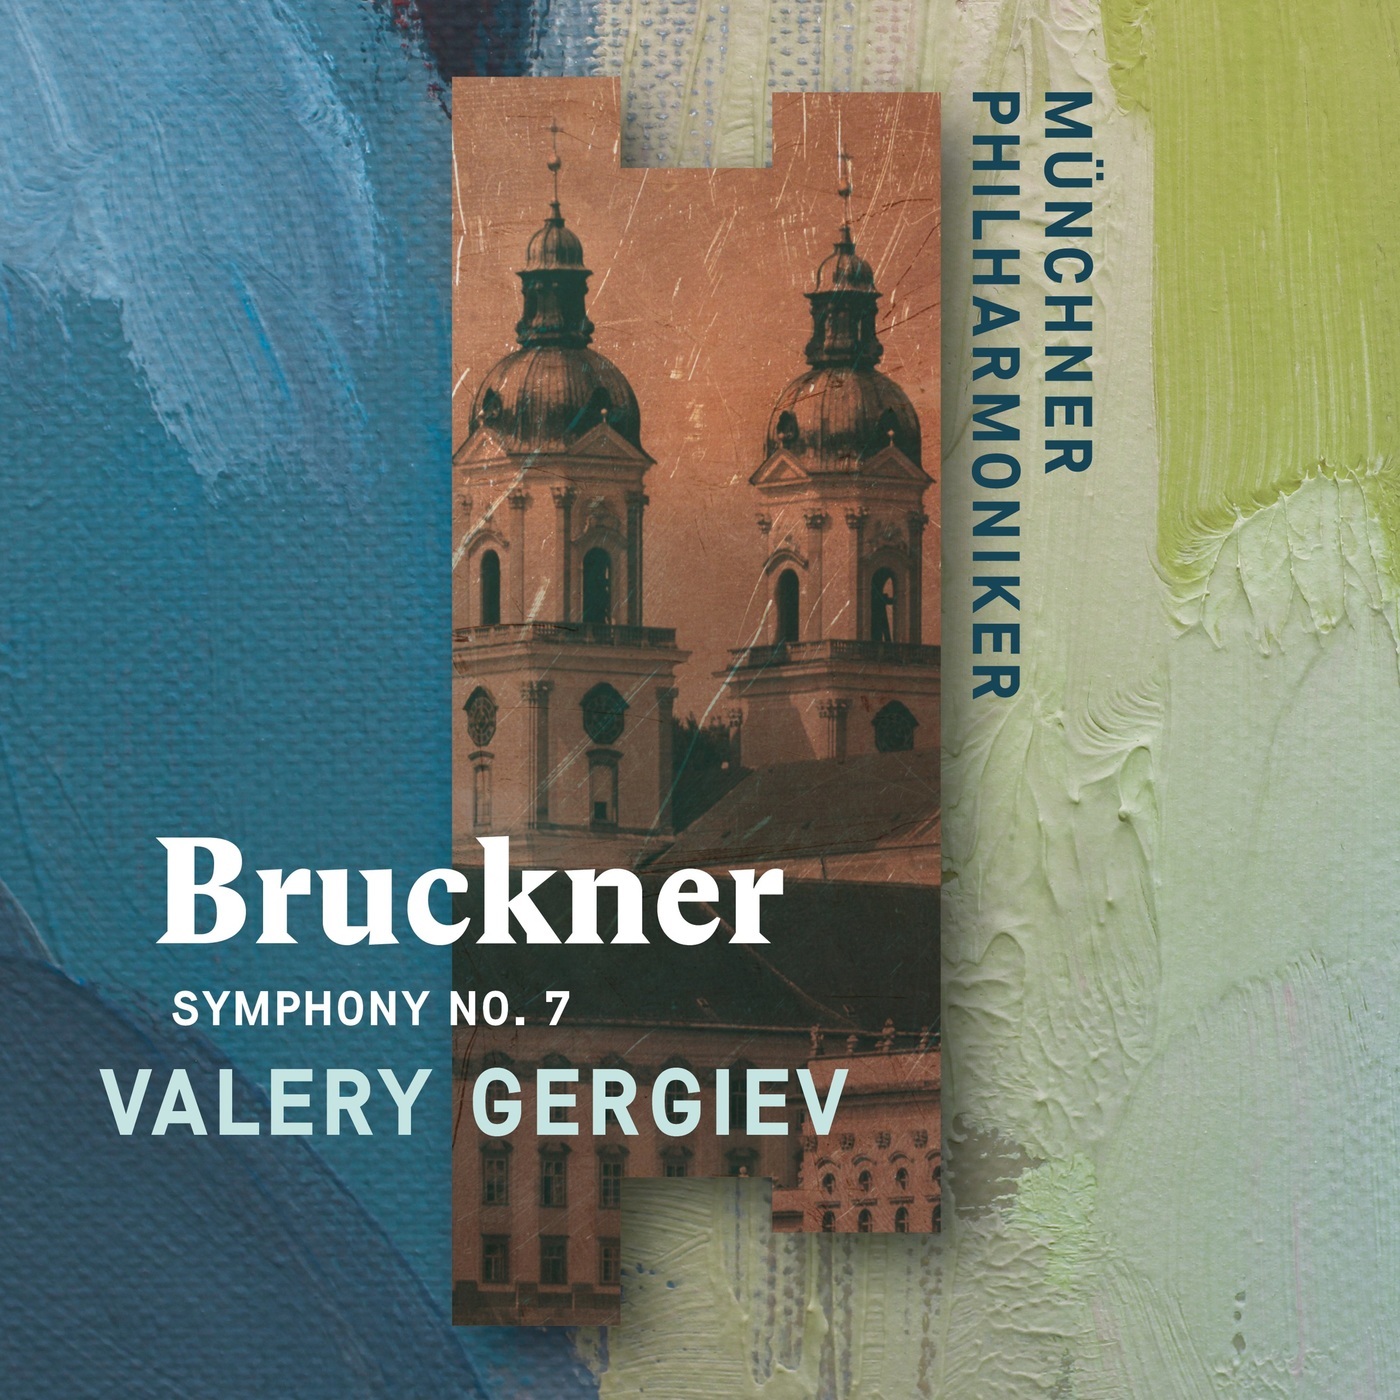 Valery Gergiev & Munich Philharmonic – Bruckner: Symphony No. 7 (2020) [FLAC 24bit/96kHz]